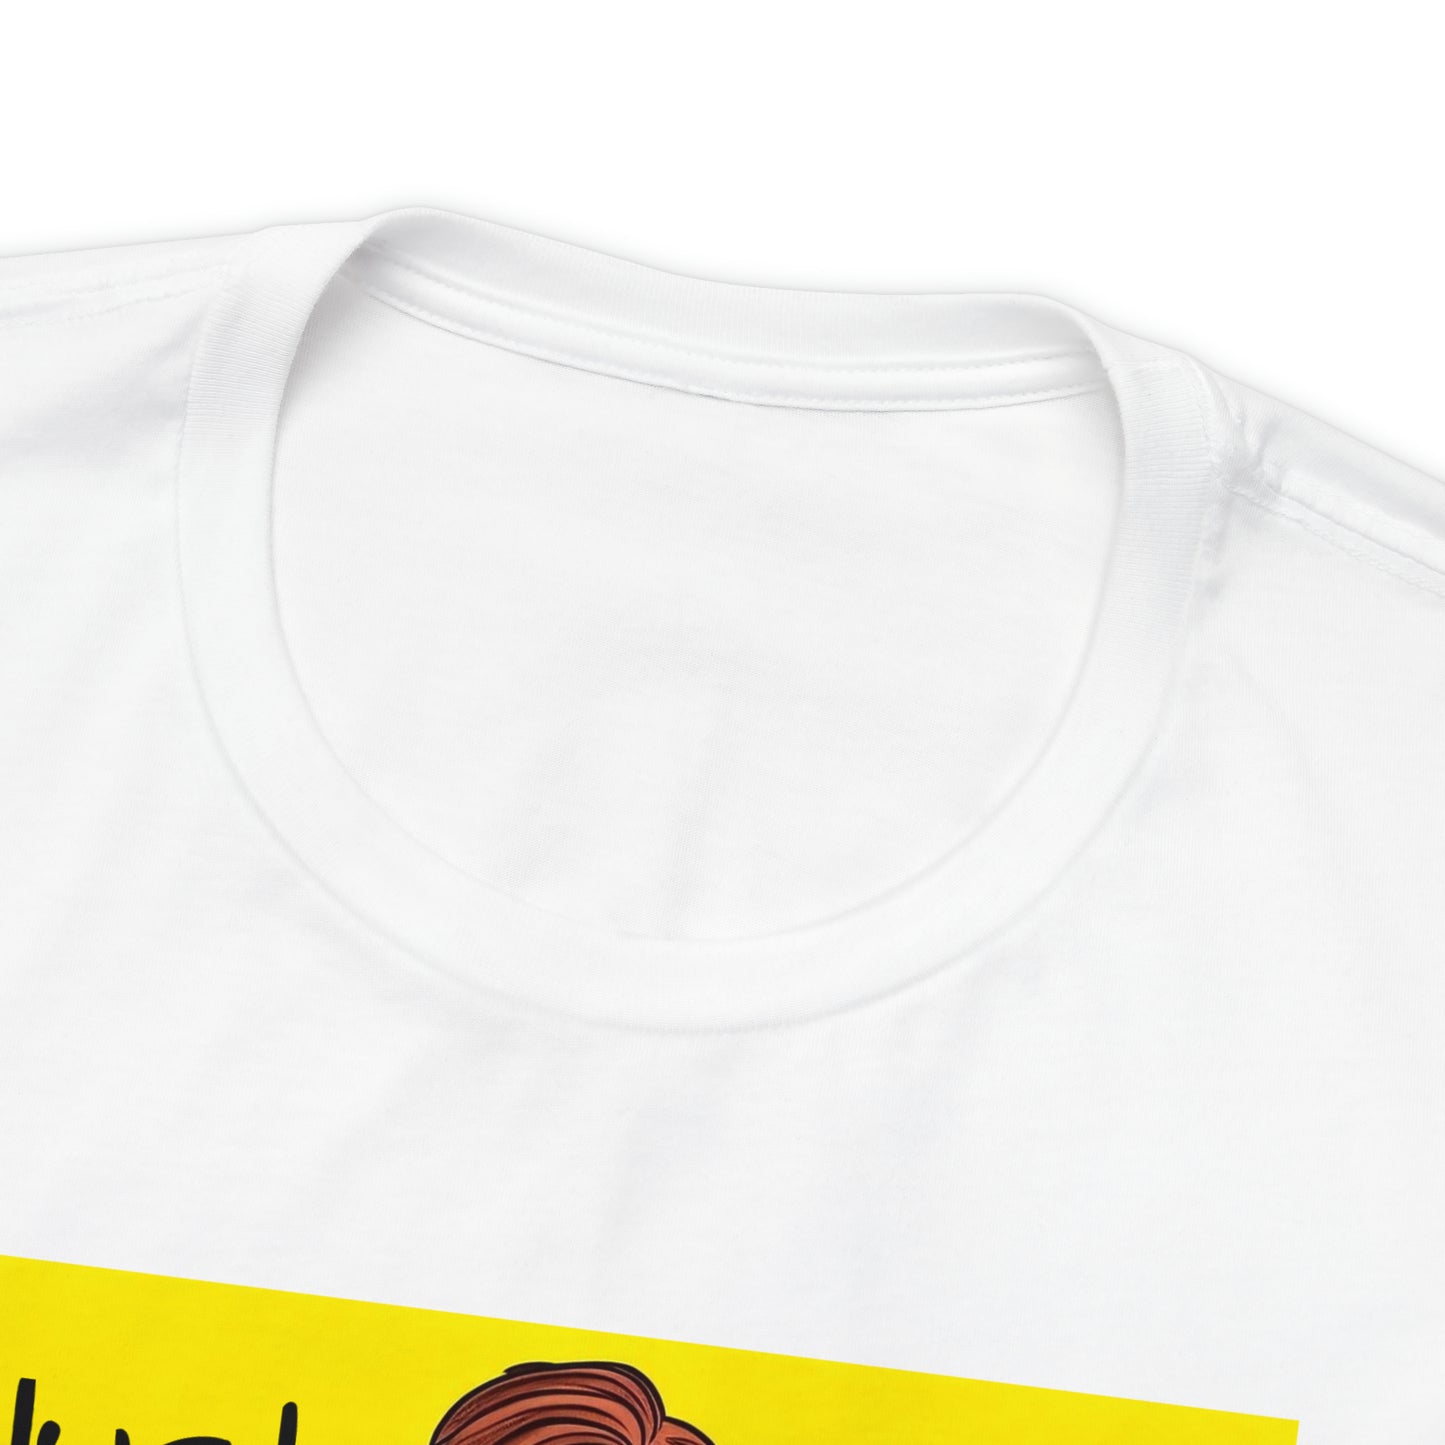 Just Chill - Lemonade Gentleman Pop Art - White Premium T-shirt